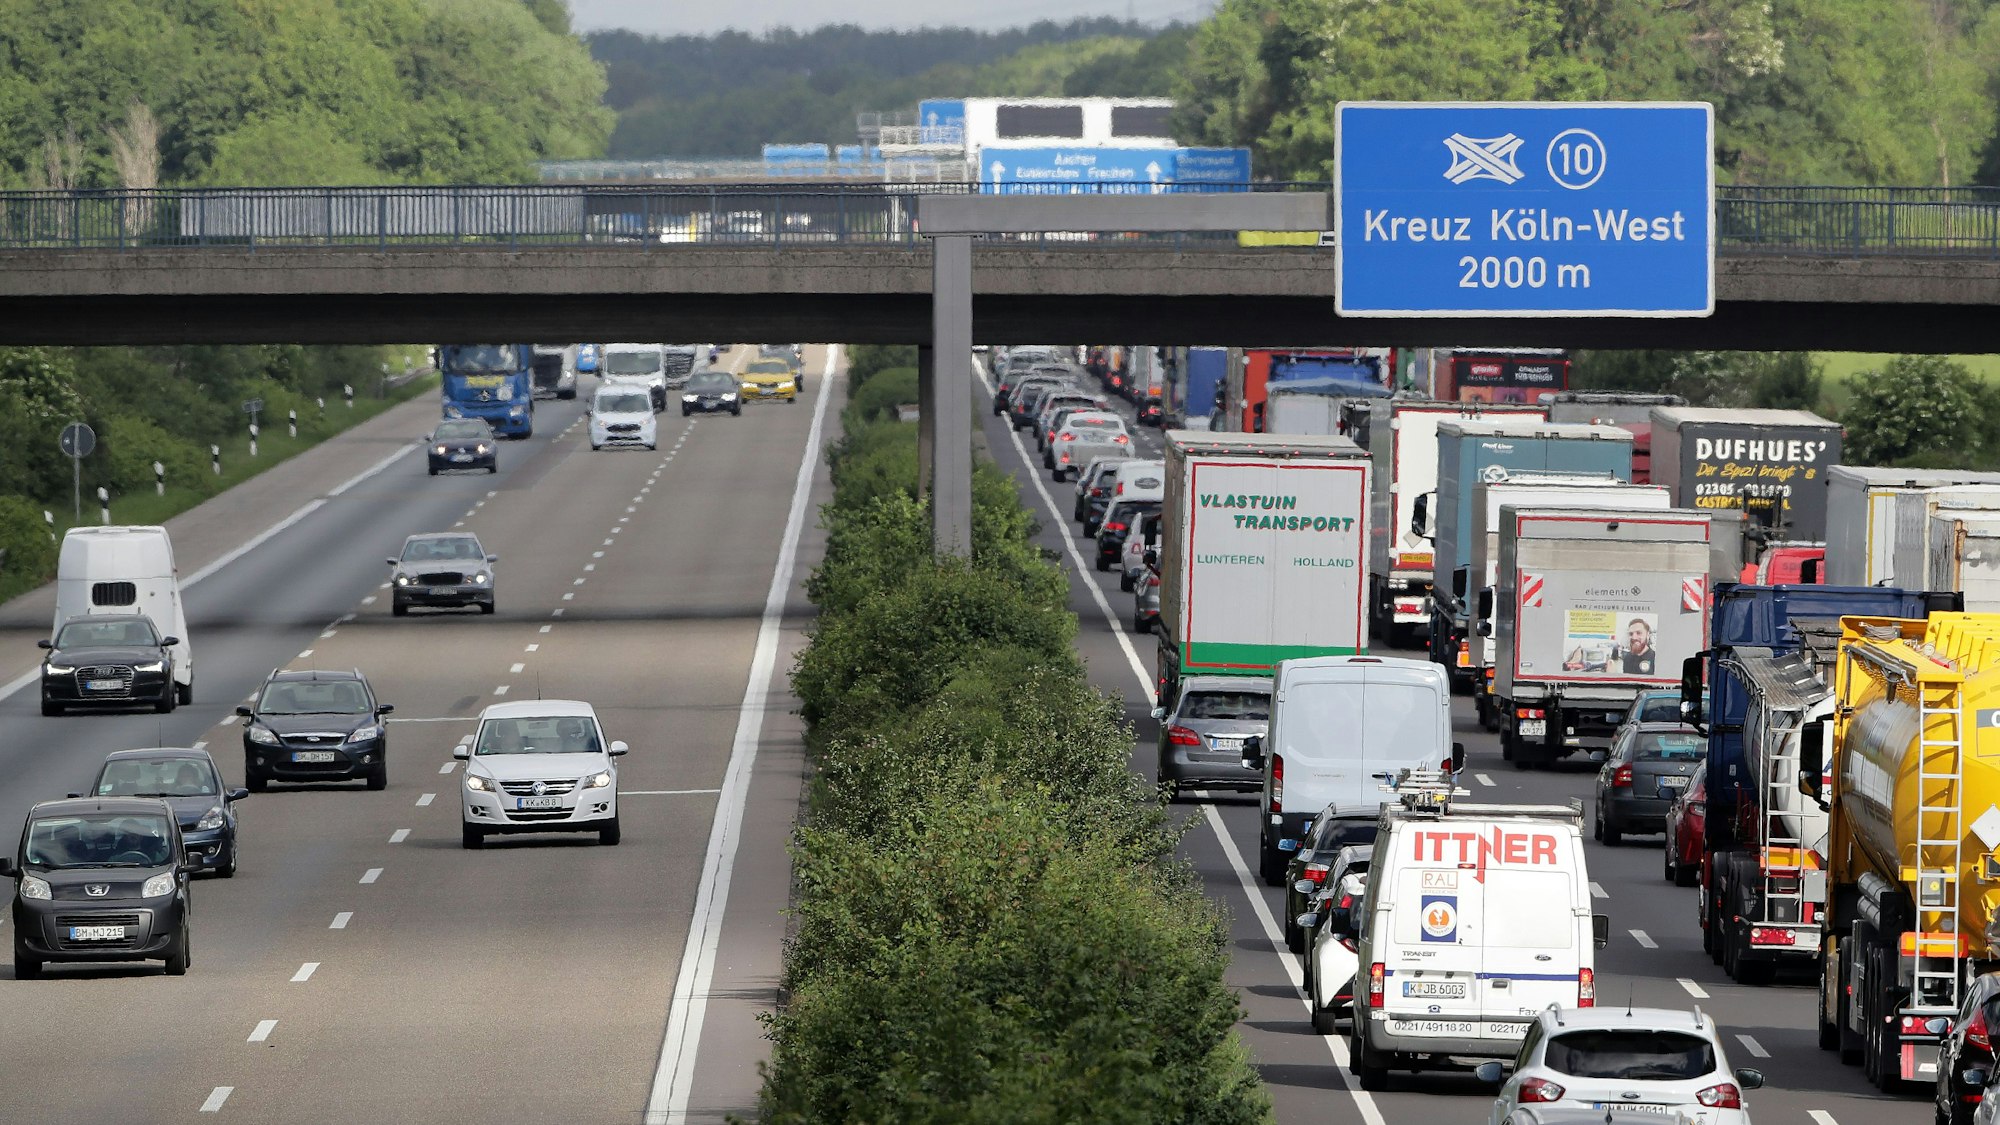 Verkehr auf der Autobahn, an einer Brücke hängt ein Schild mit der Aufschrift „Kreuz Köln-West 2000 m“.